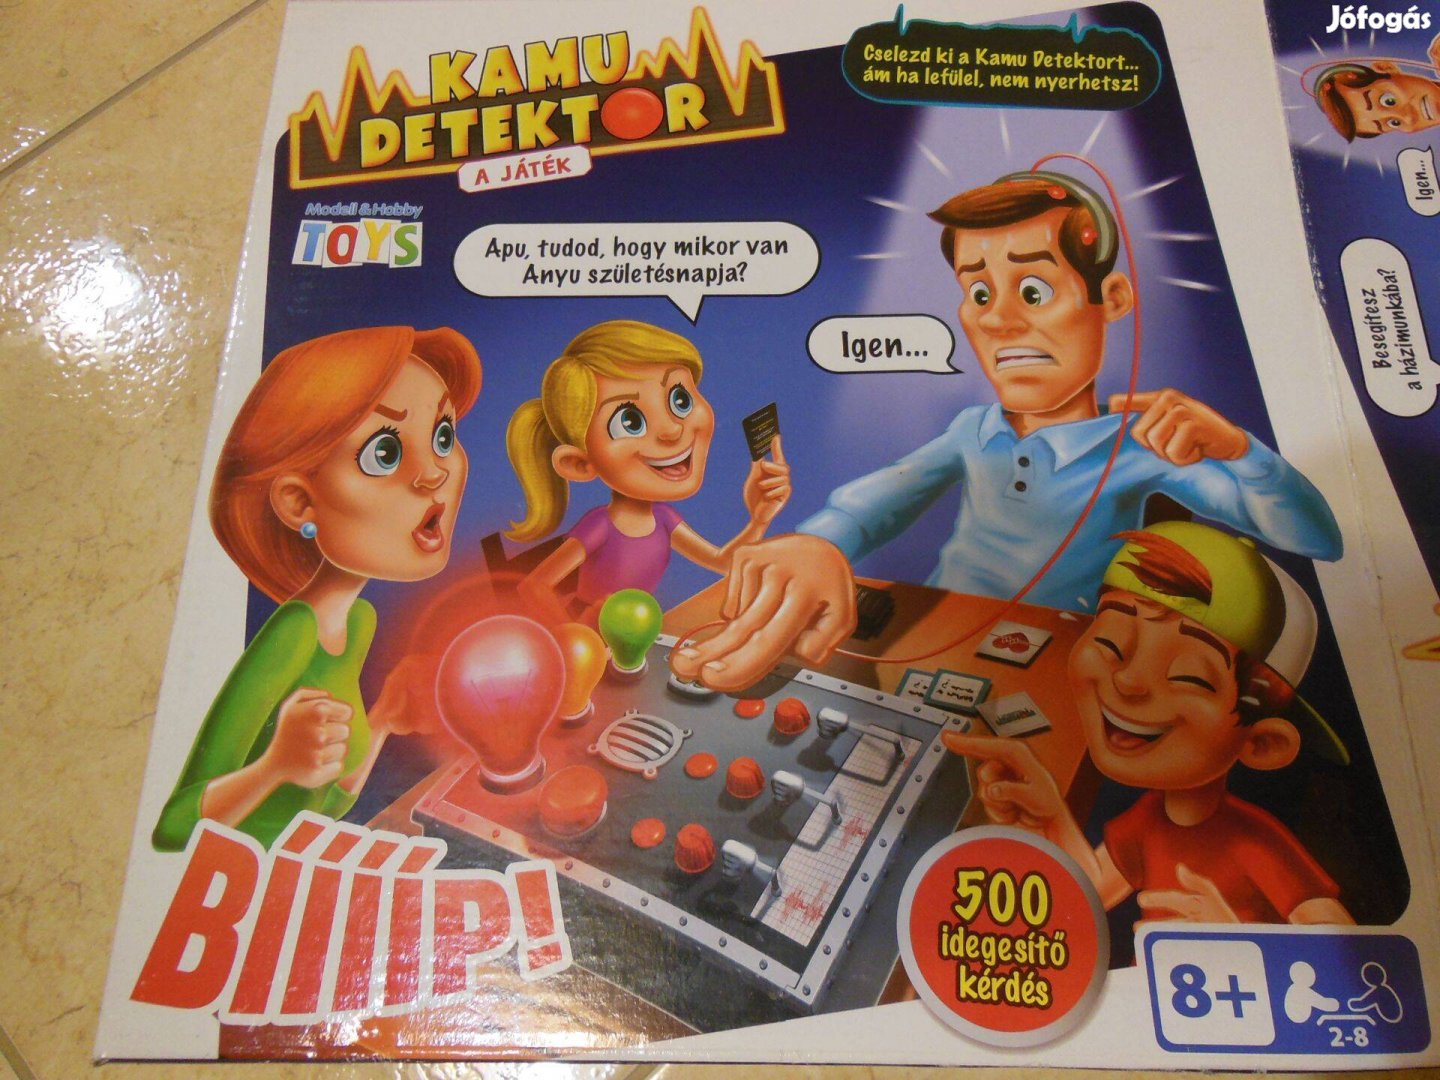 Kamu detektor társasjáték, szórakoztató hazugságvizsgáló családi játék